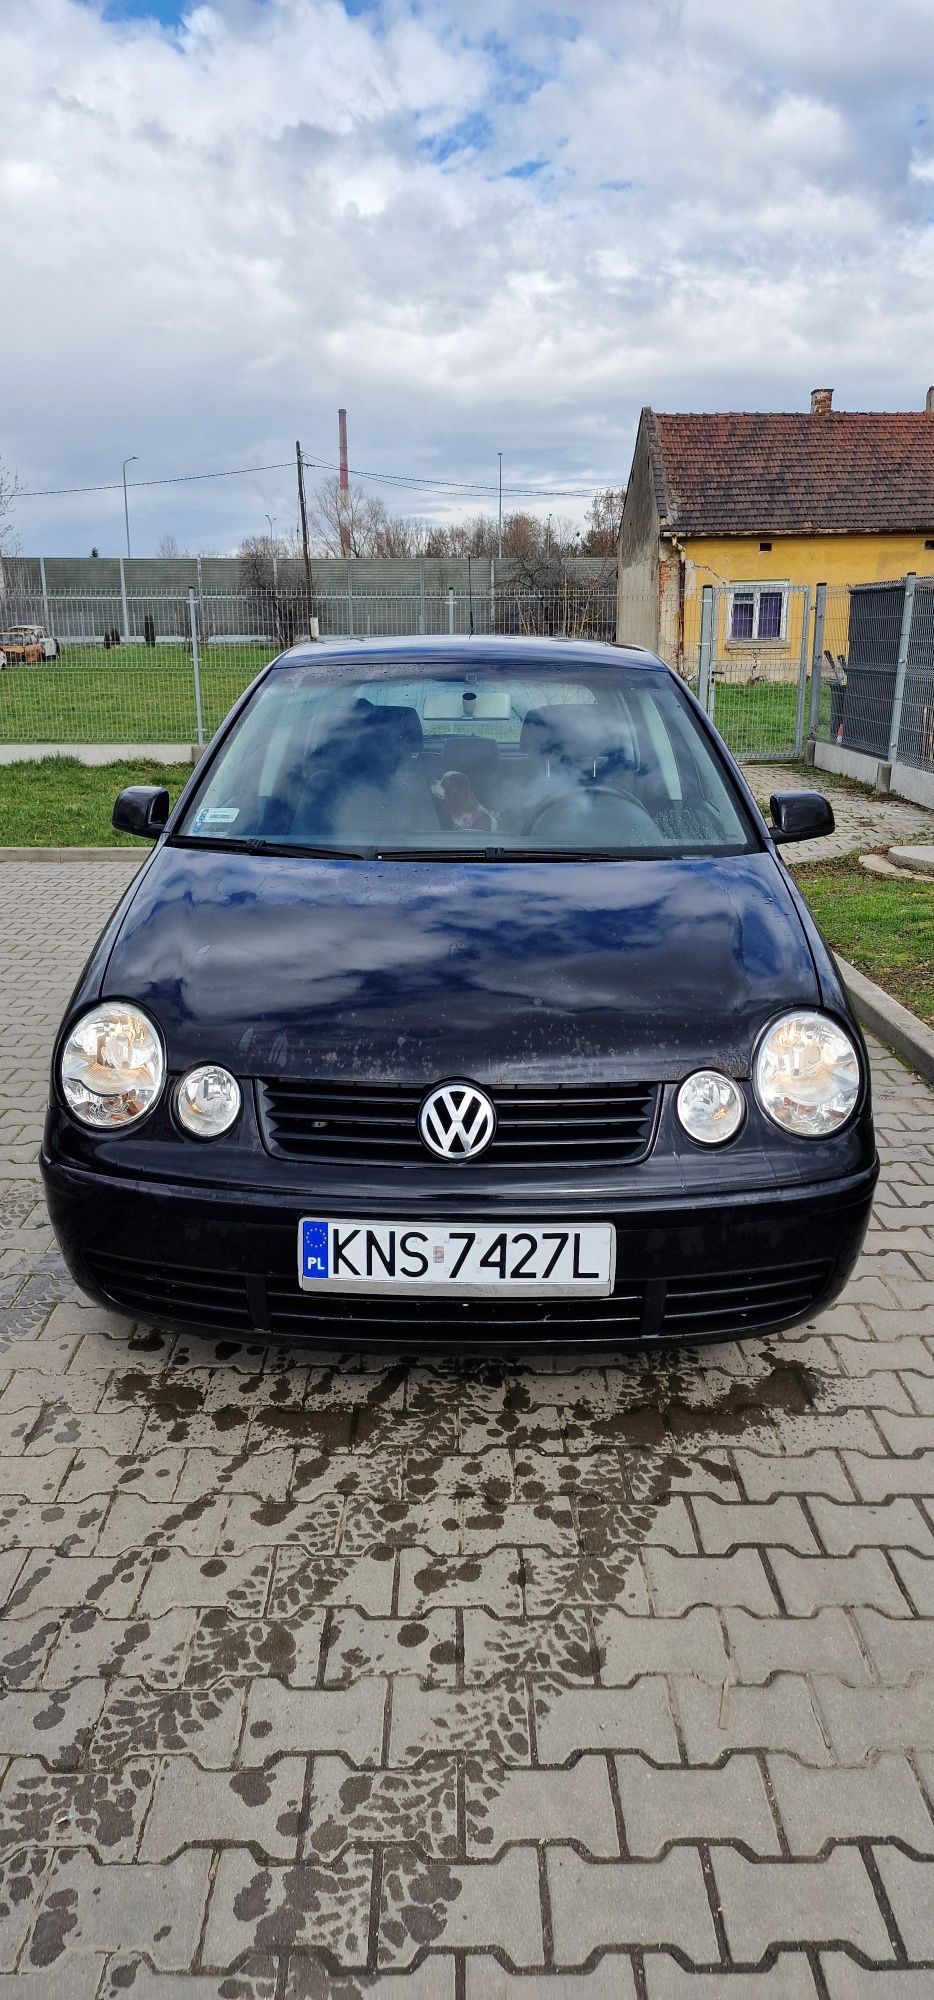 Volkswagen Polo 9n